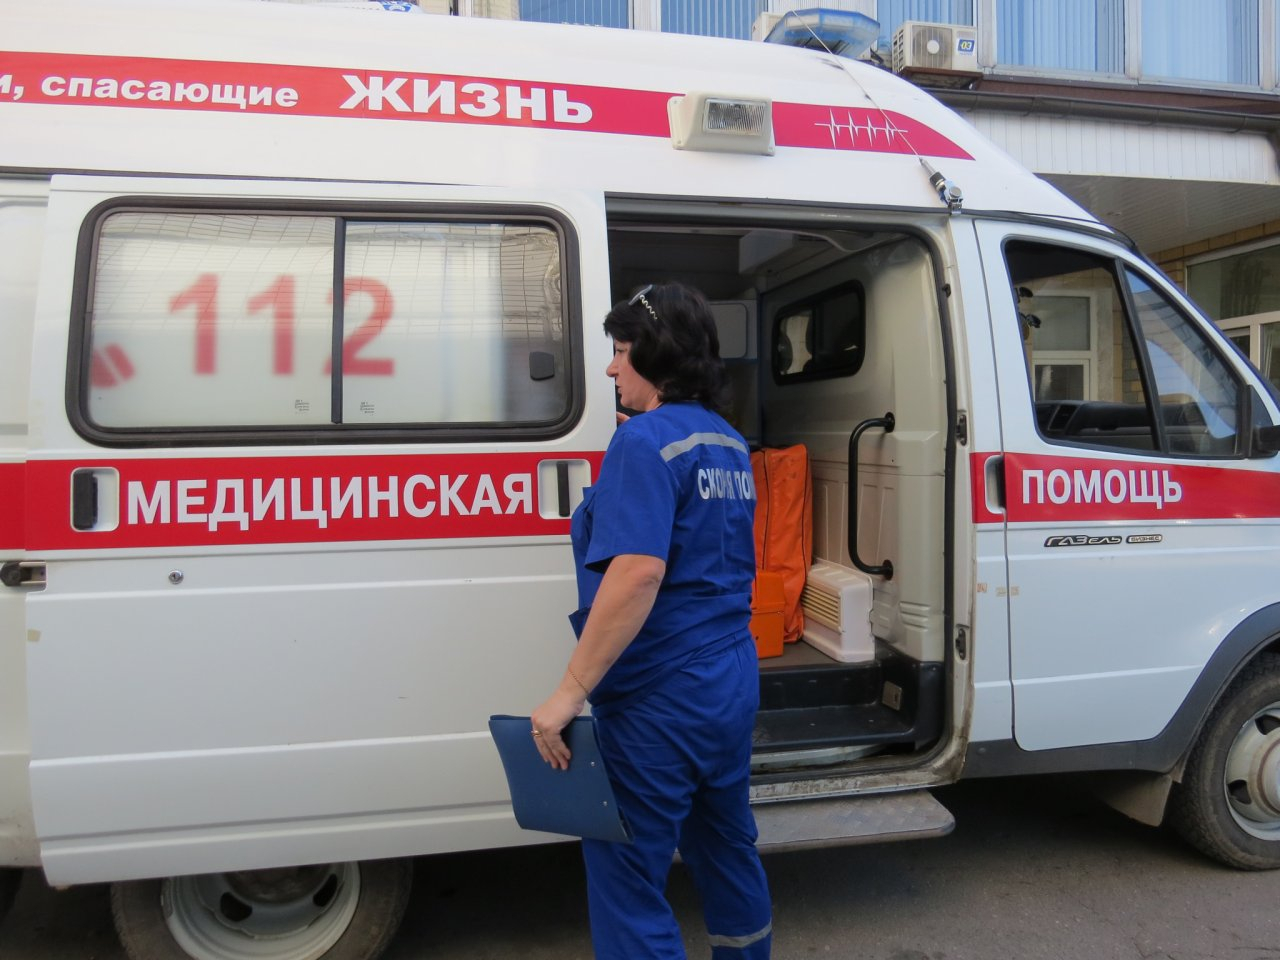 39-летний мужчина сломал плечо и получил ожог руки на производстве в Нижегородской области